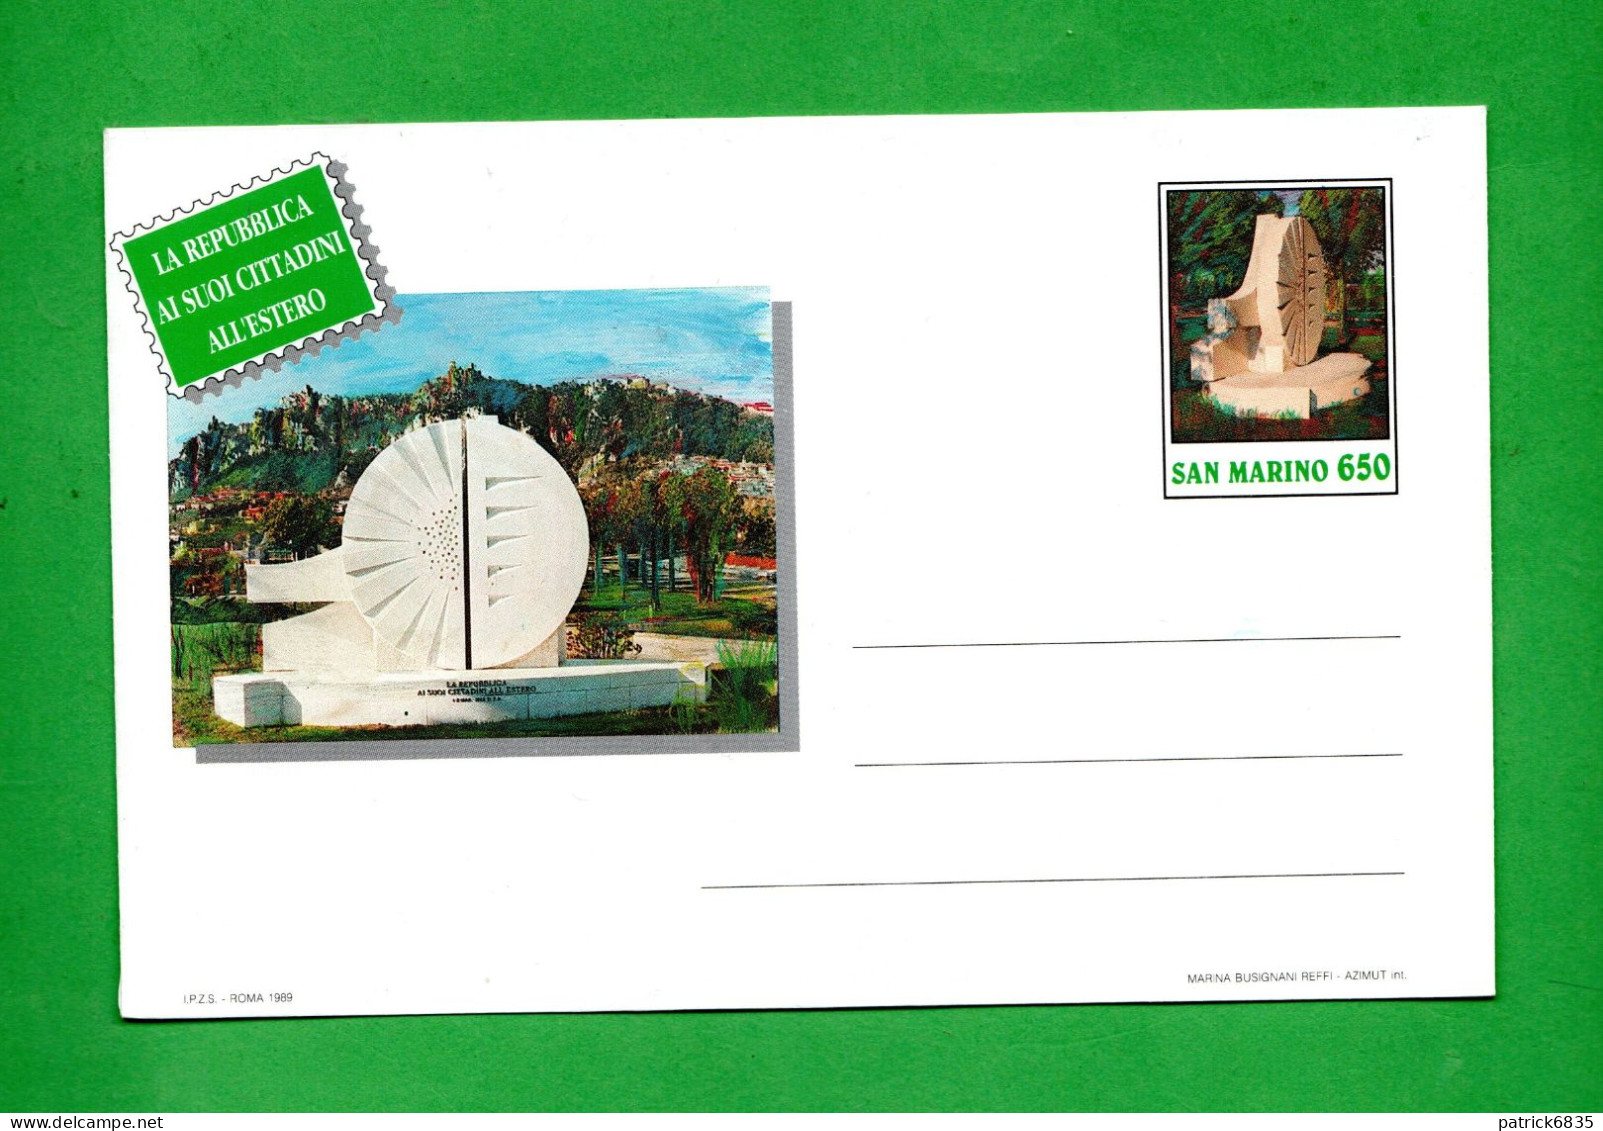 San. MARino - 1989 - Busta Postale, La Repubblica Ai Suoi Cittadini All'Estero,  £ 650. - Interi Postali